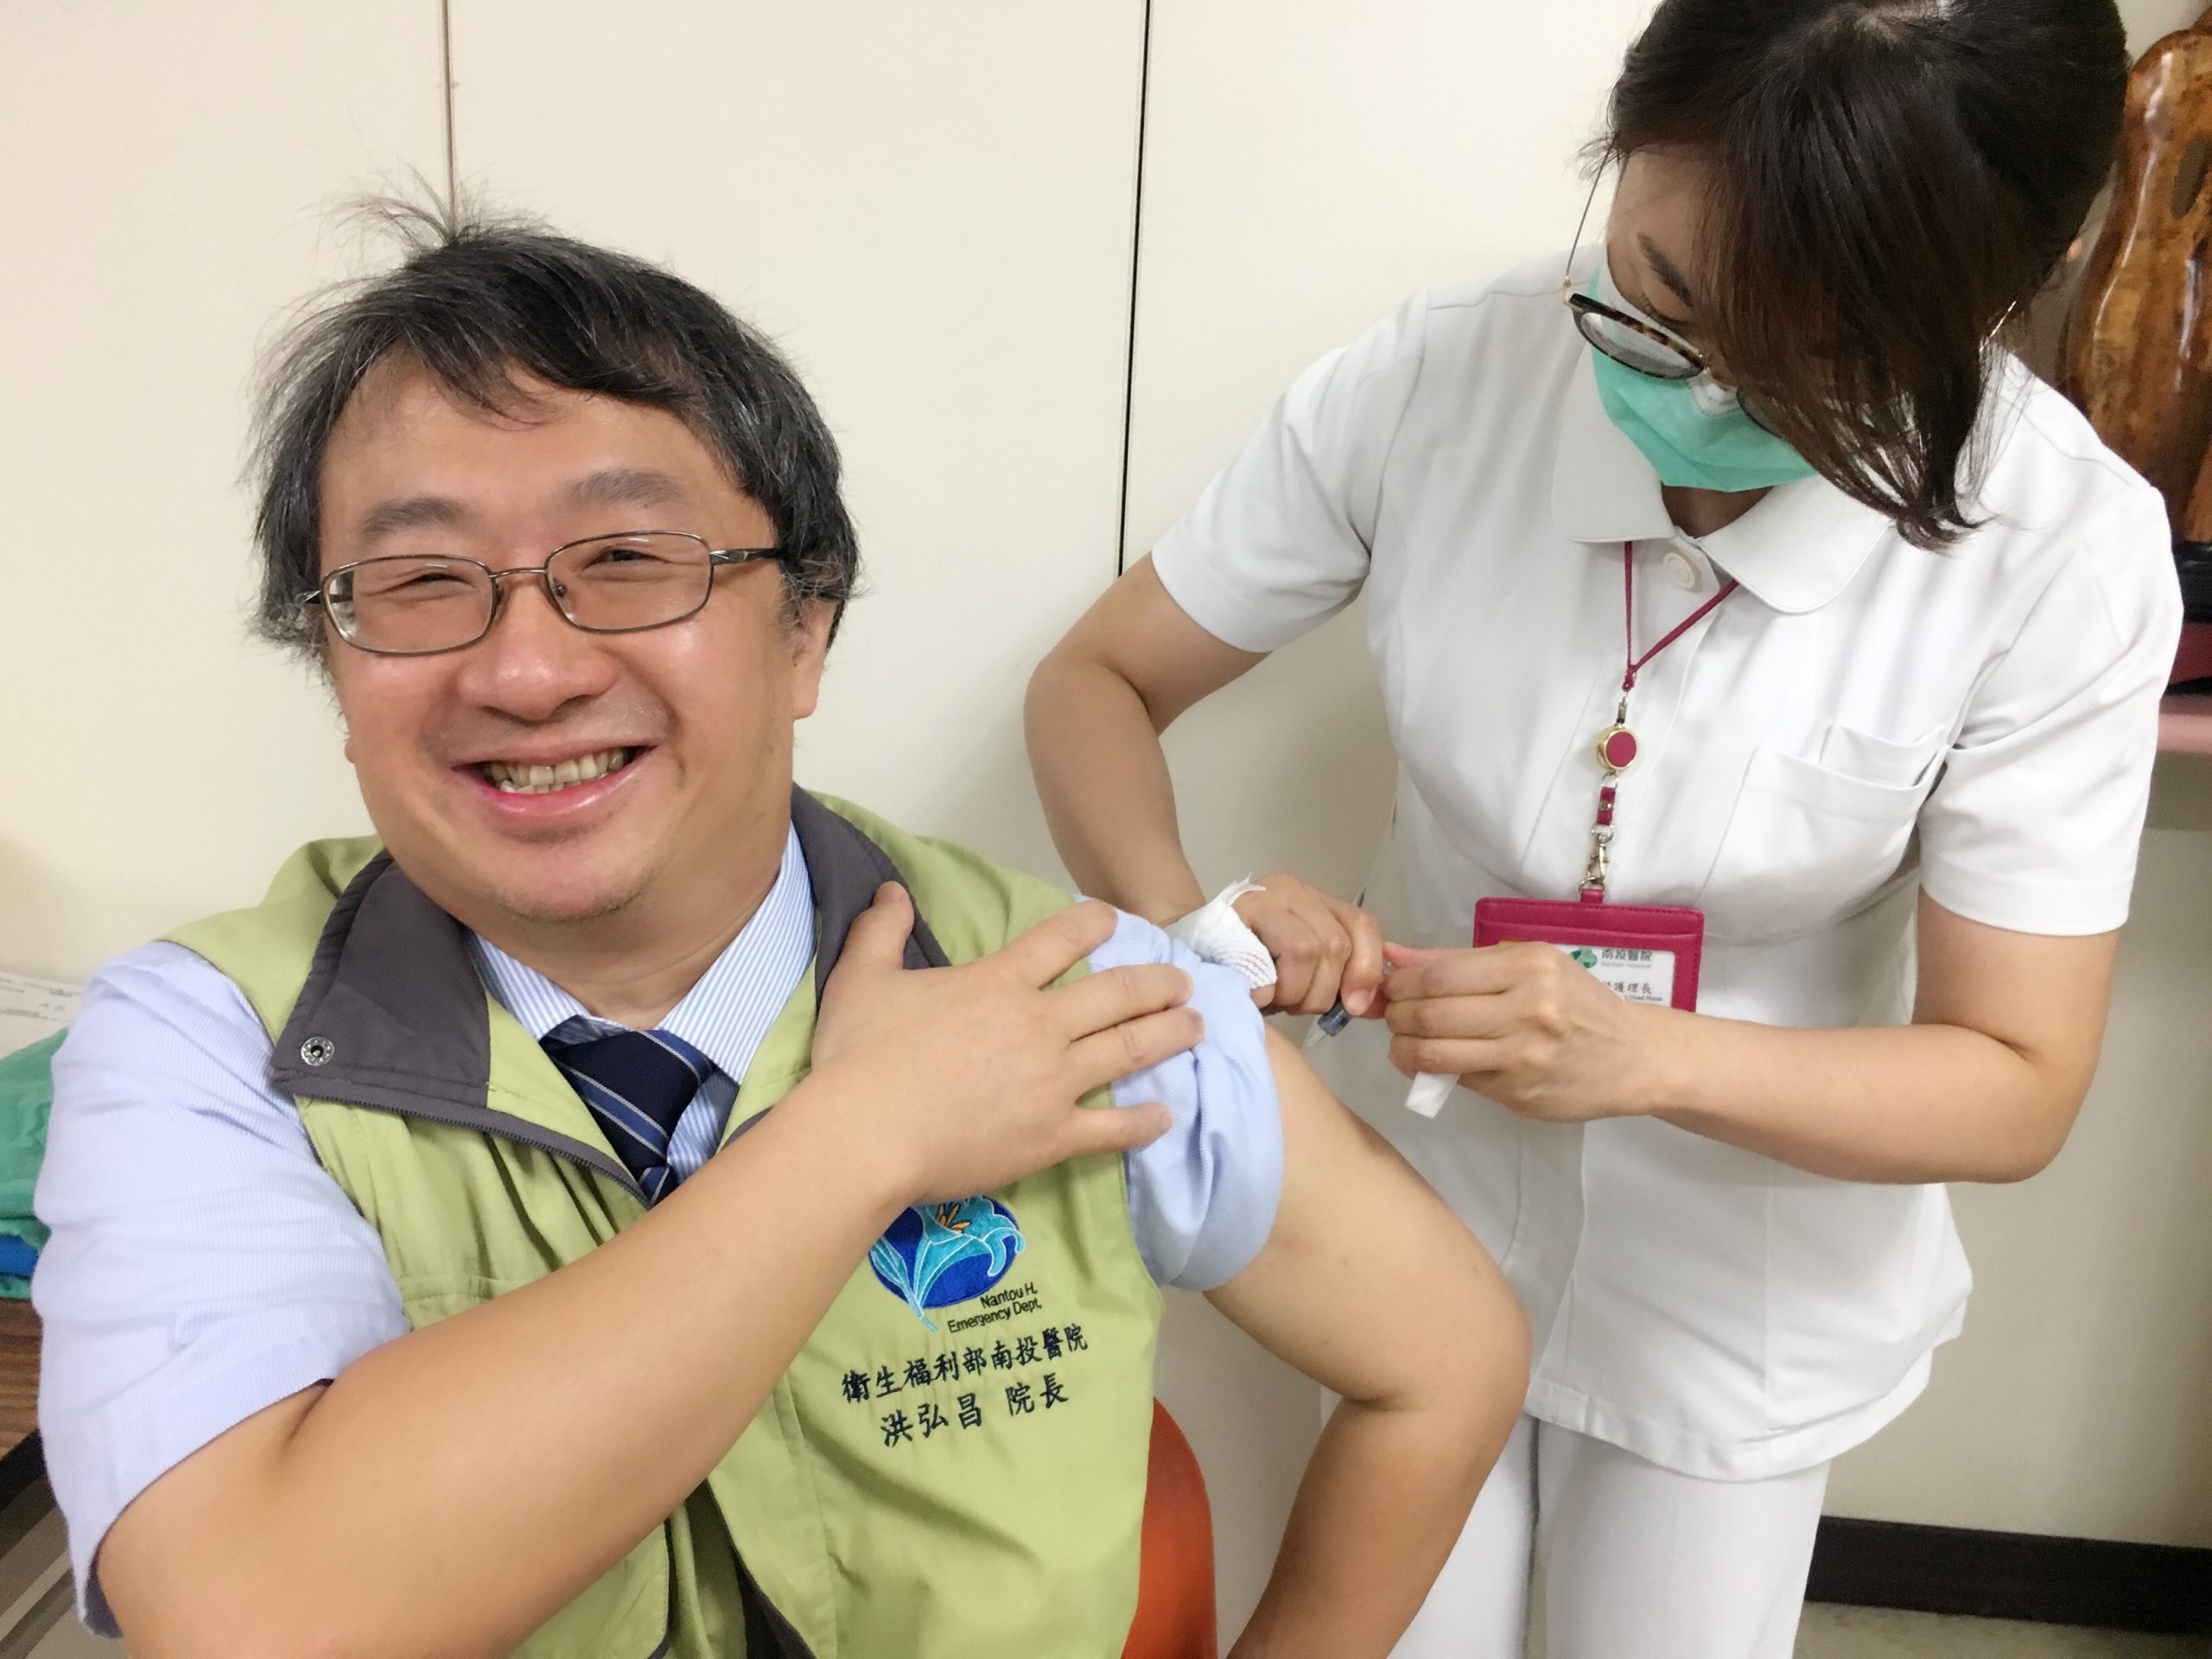 預防帶狀疱疹及併發症 南投醫院補助員工疫苗費守護健康